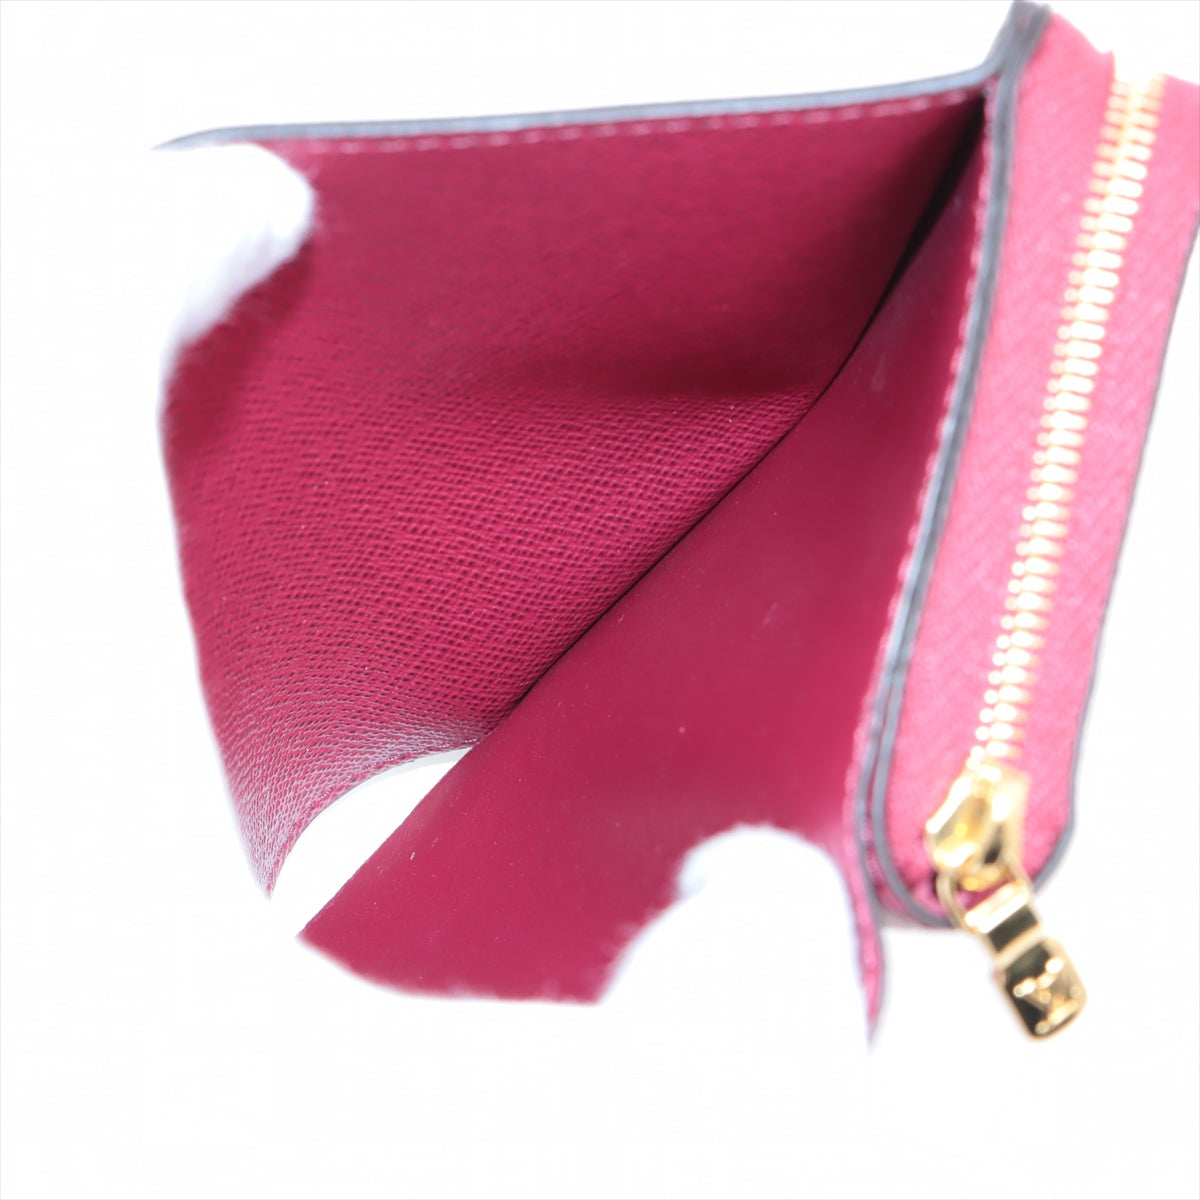 Louis Vuitton Monogram Portefeuilles Roux M82377 Fuschia pink Compact Wallet